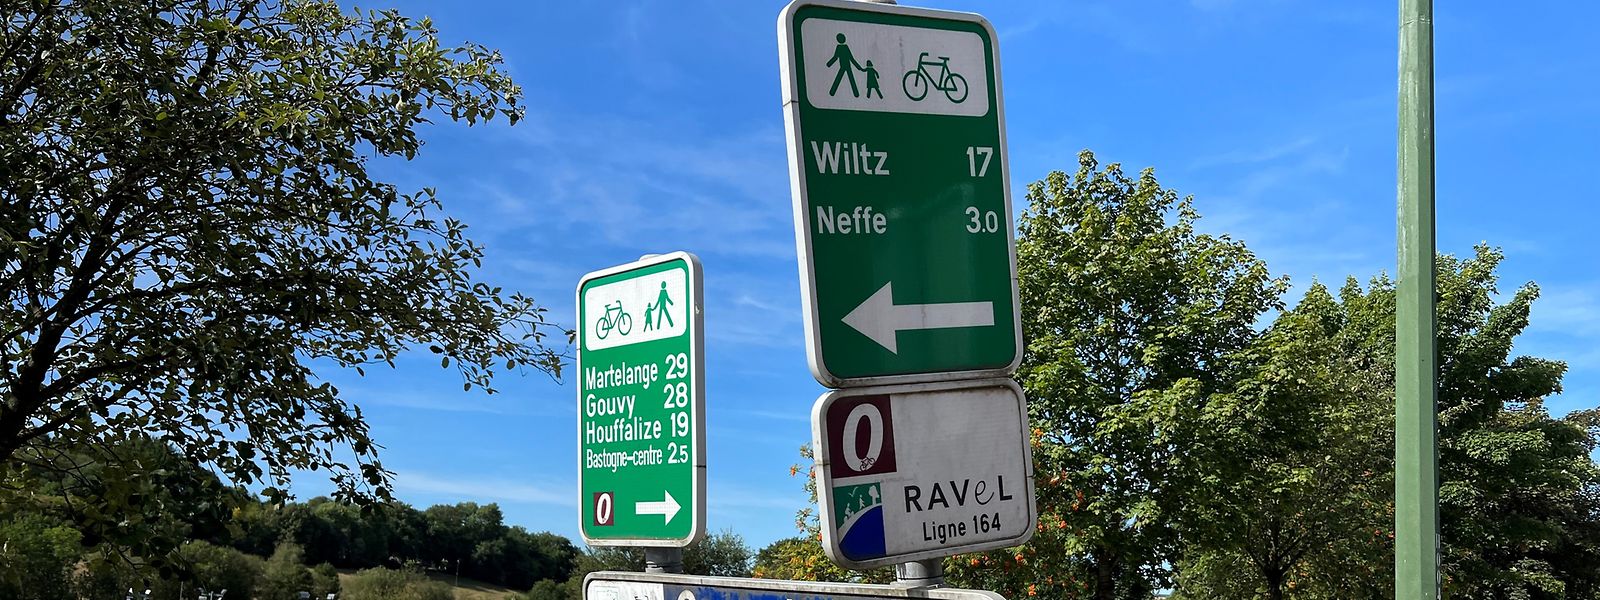 Depuis Bastogne, il vous faudra parcourir une petite vingtaine de kilomètres pour rejoindre Wiltz, au Luxembourg.